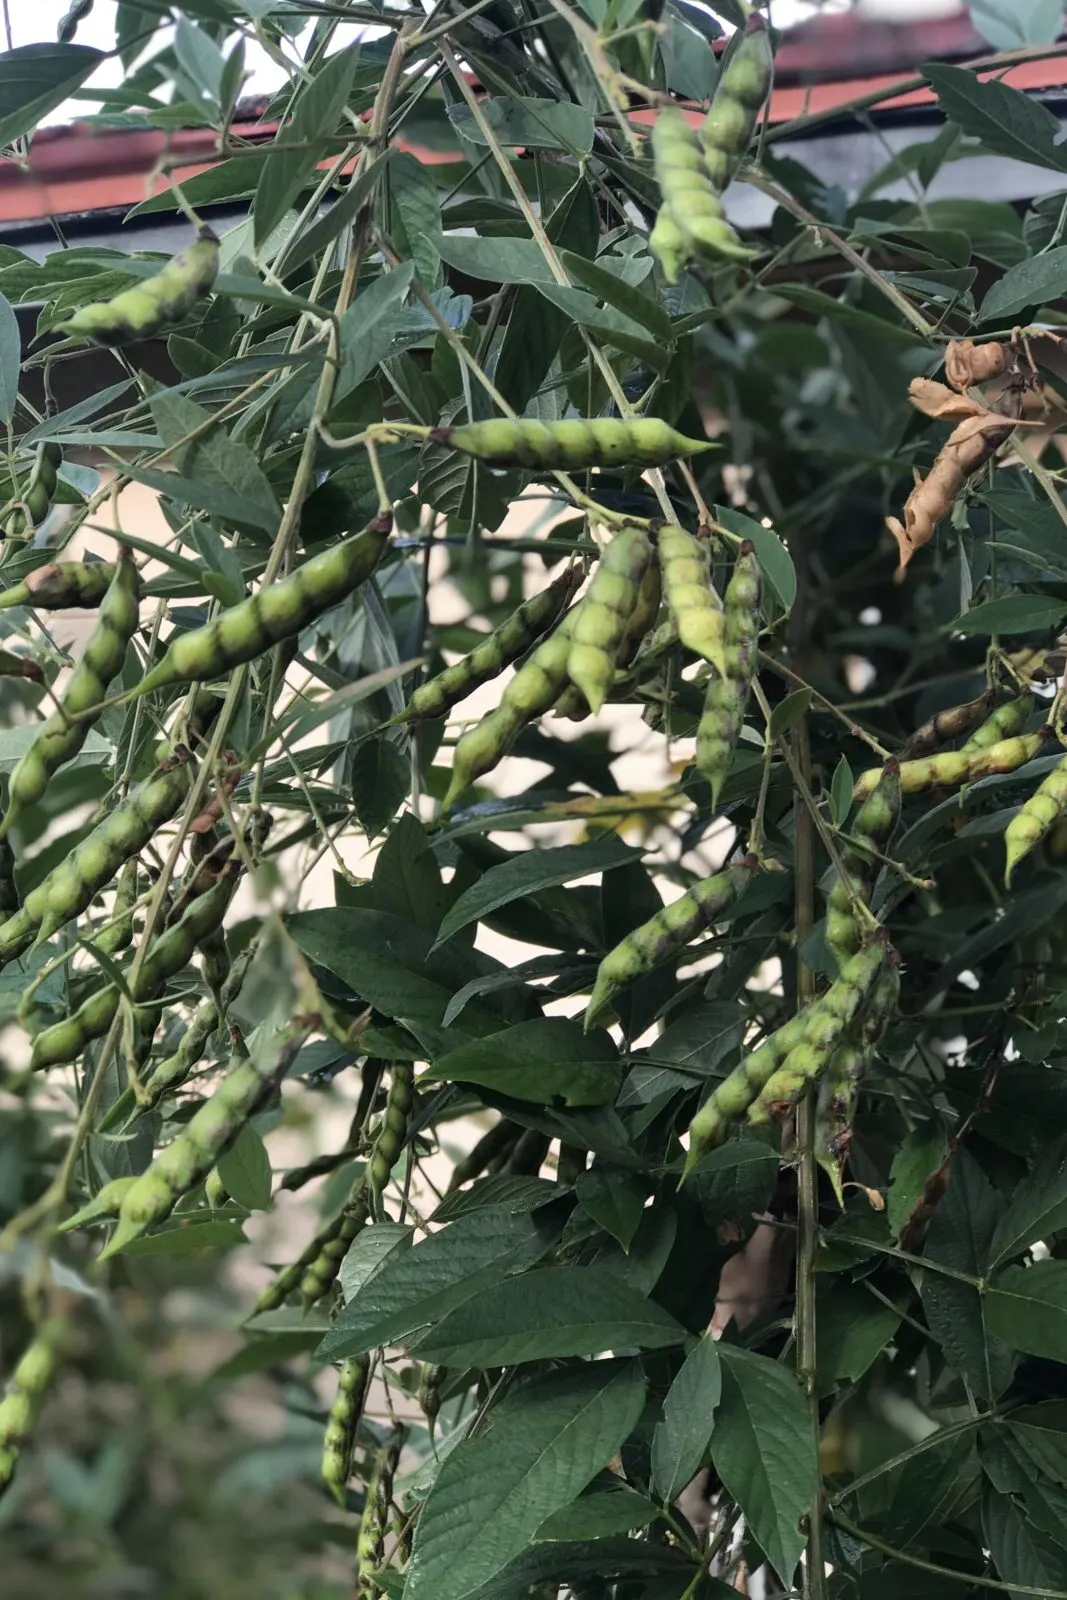 pigeon peas growing